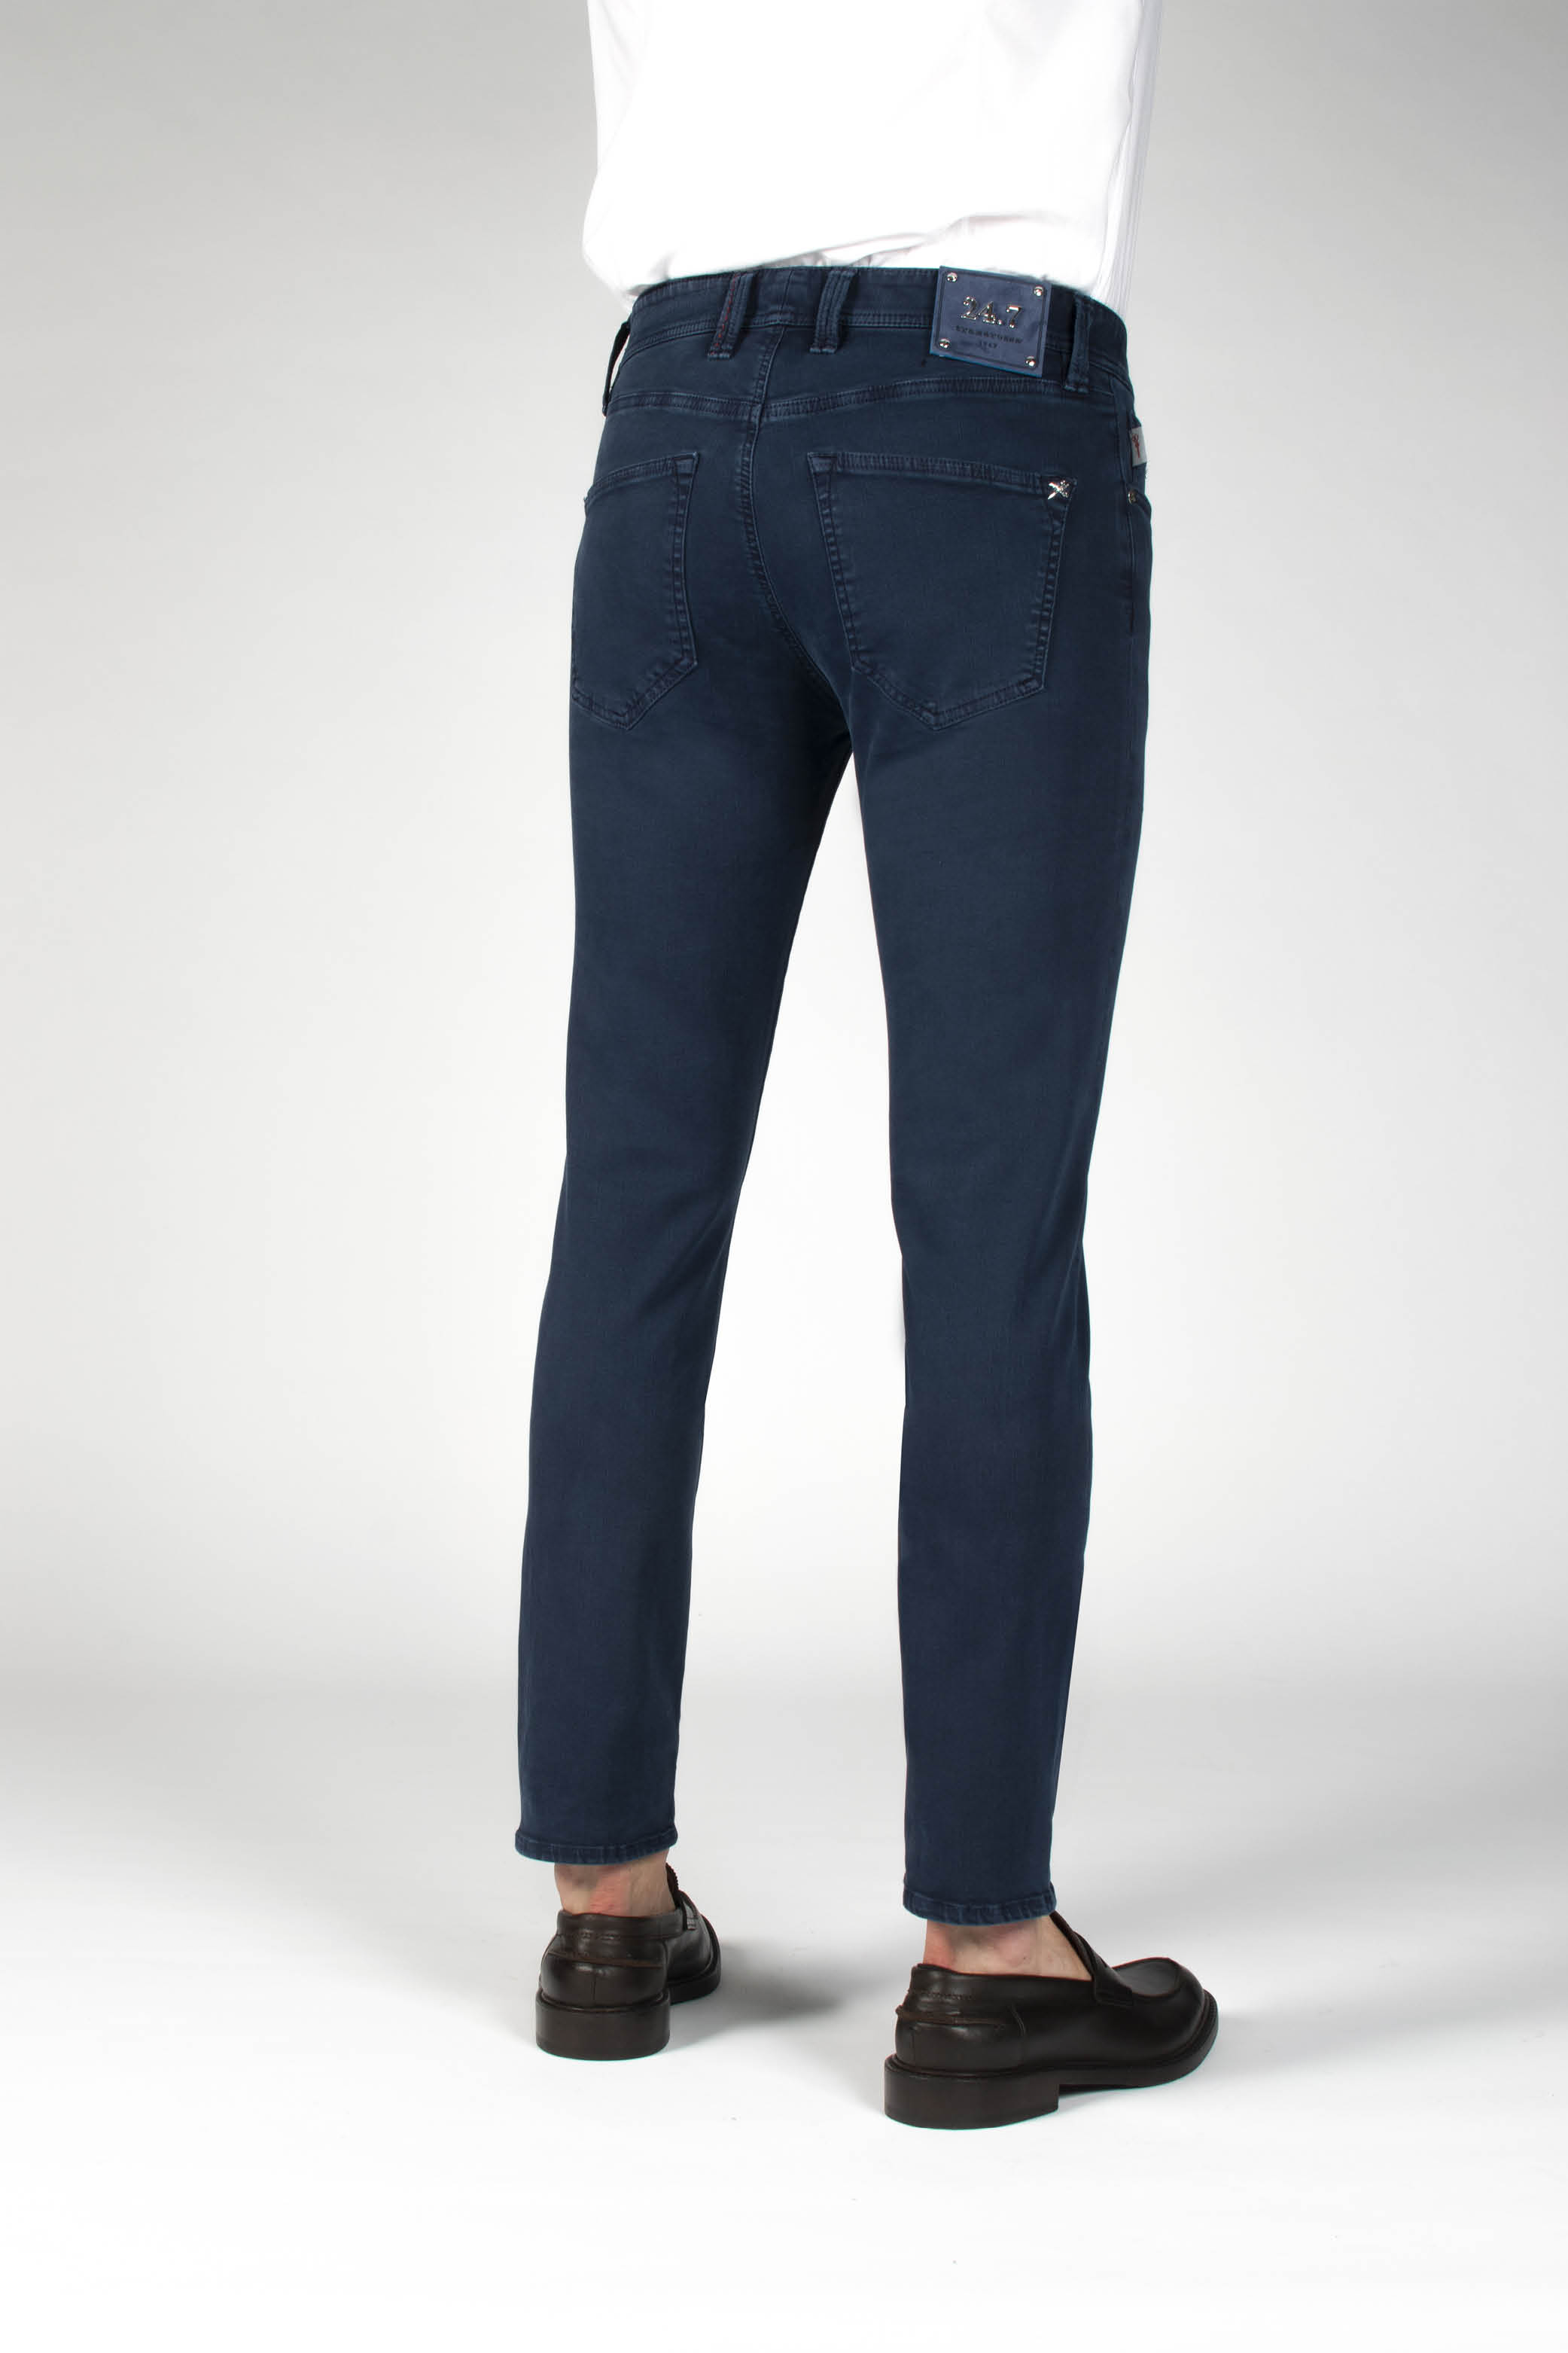 Tramarossa Navy Blue 24.7 5 Pocket Jeans - Rogue